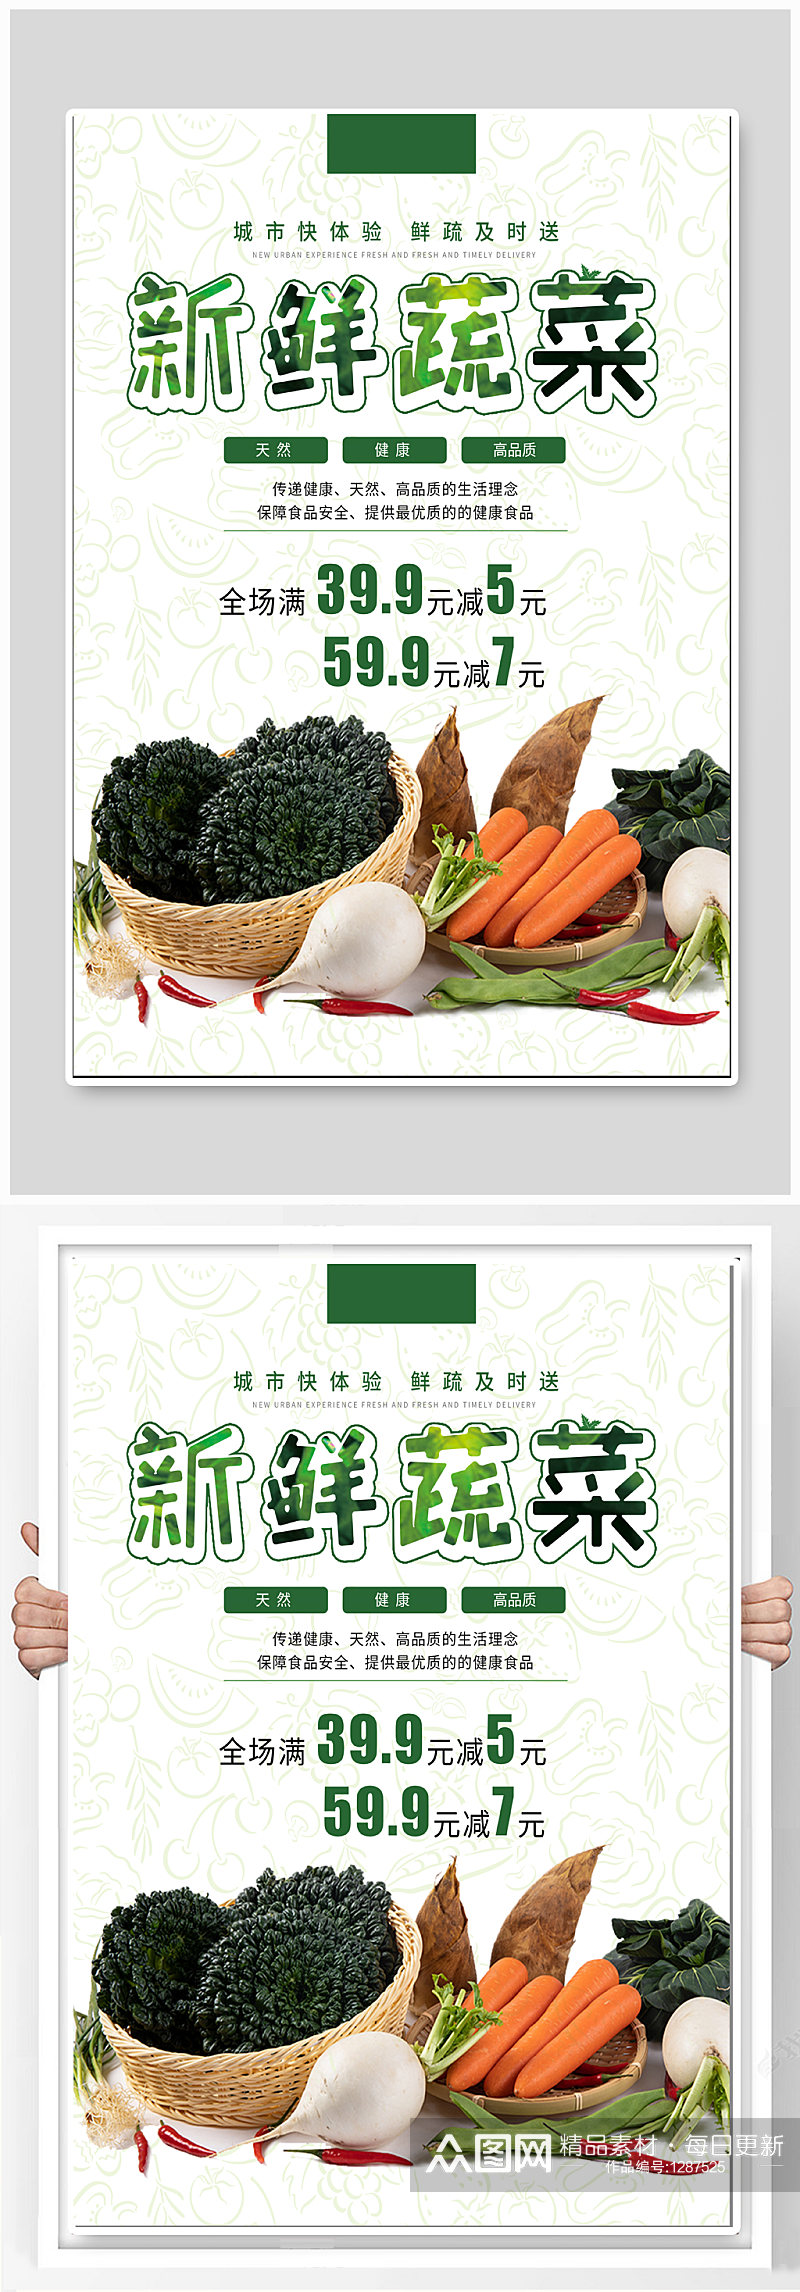 新鲜蔬菜促销海报素材